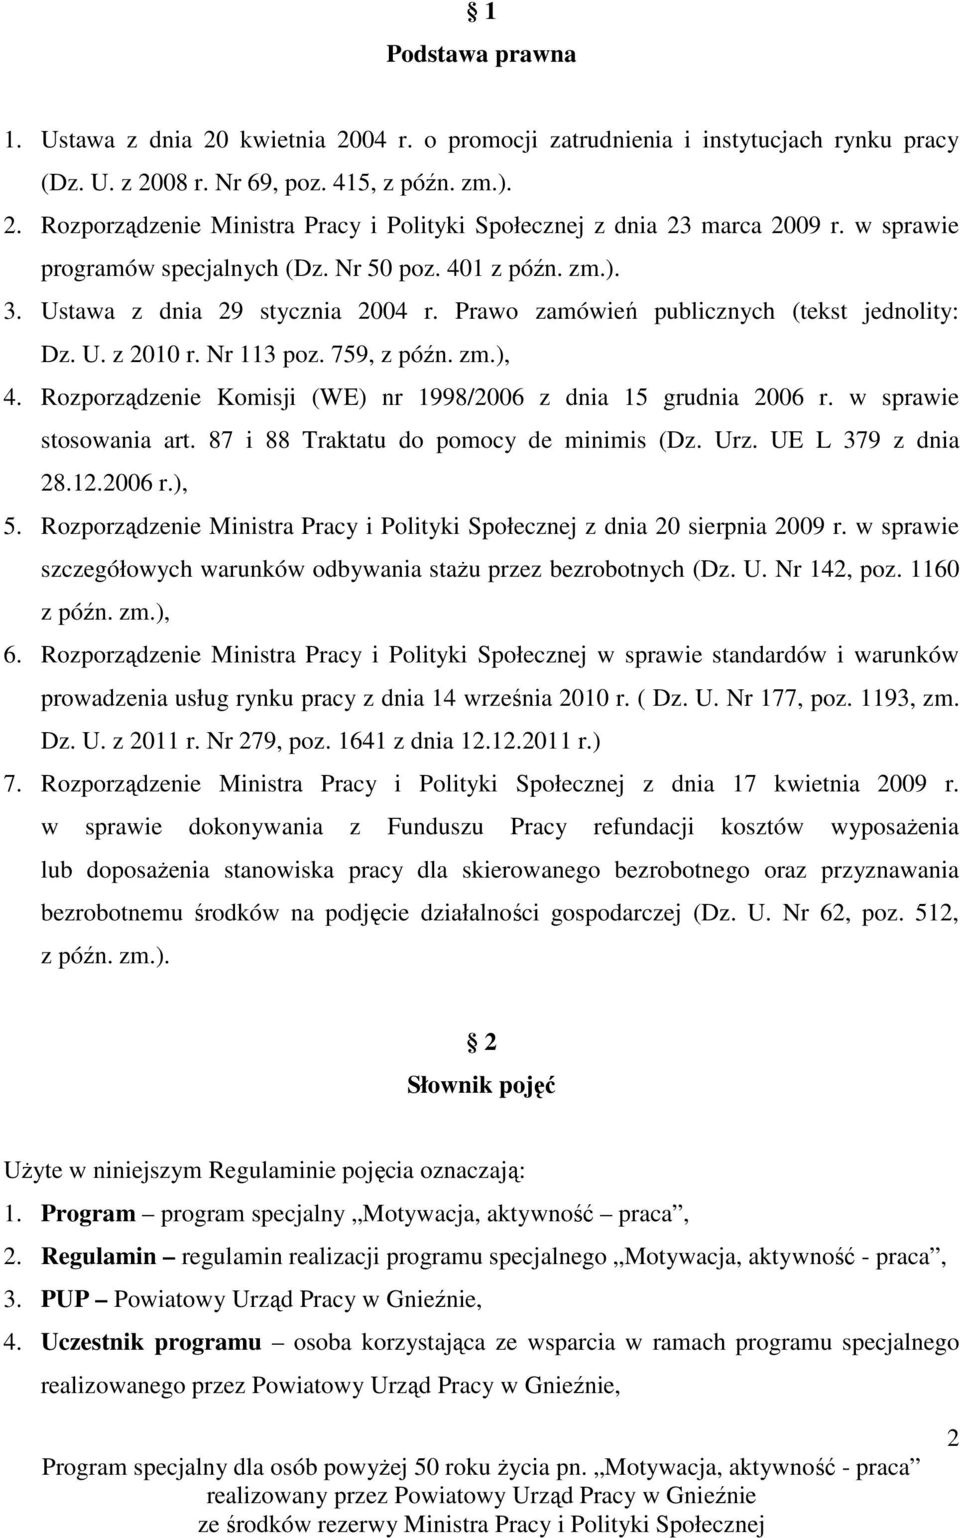 Rozporządzenie Komisji (WE) nr 1998/2006 z dnia 15 grudnia 2006 r. w sprawie stosowania art. 87 i 88 Traktatu do pomocy de minimis (Dz. Urz. UE L 379 z dnia 28.12.2006 r.), 5.